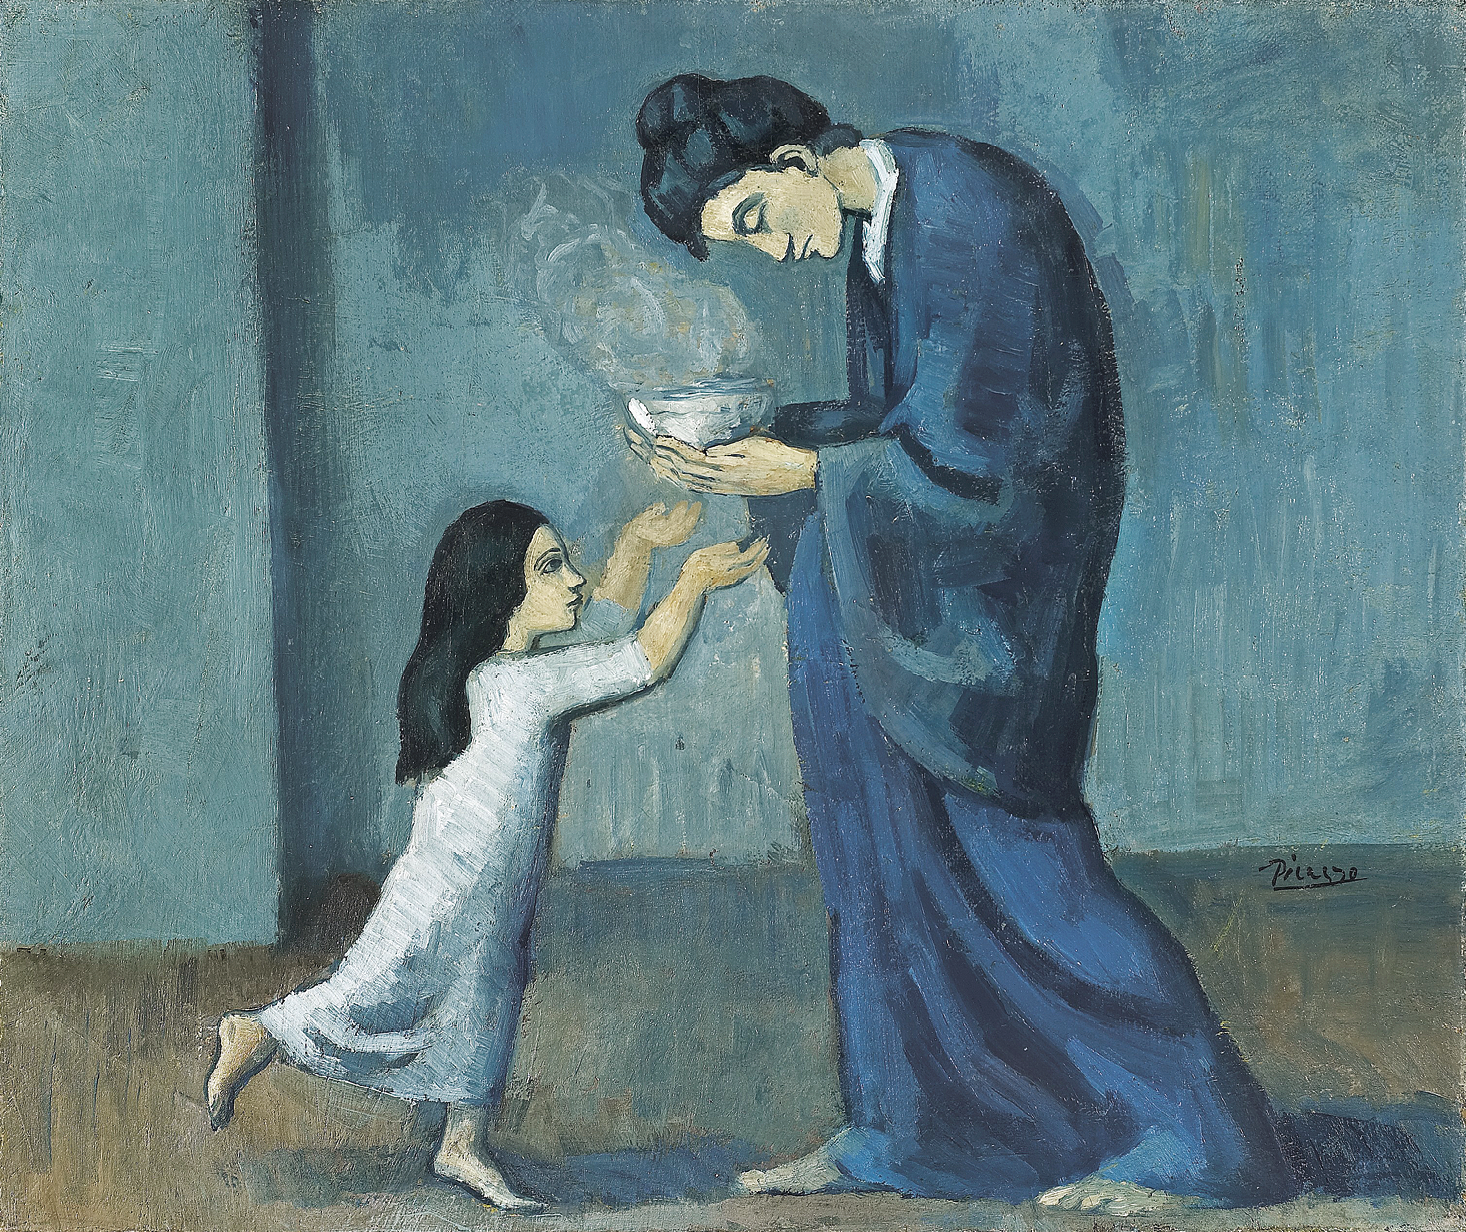 Pintura. Em tons de azul, uma mulher adulta de longa bata está de pé com a cabeça curvada e segura uma tigela com as duas mãos diante de uma criança de vestido longo e de pé estendendo os braços em direção ao recipiente.